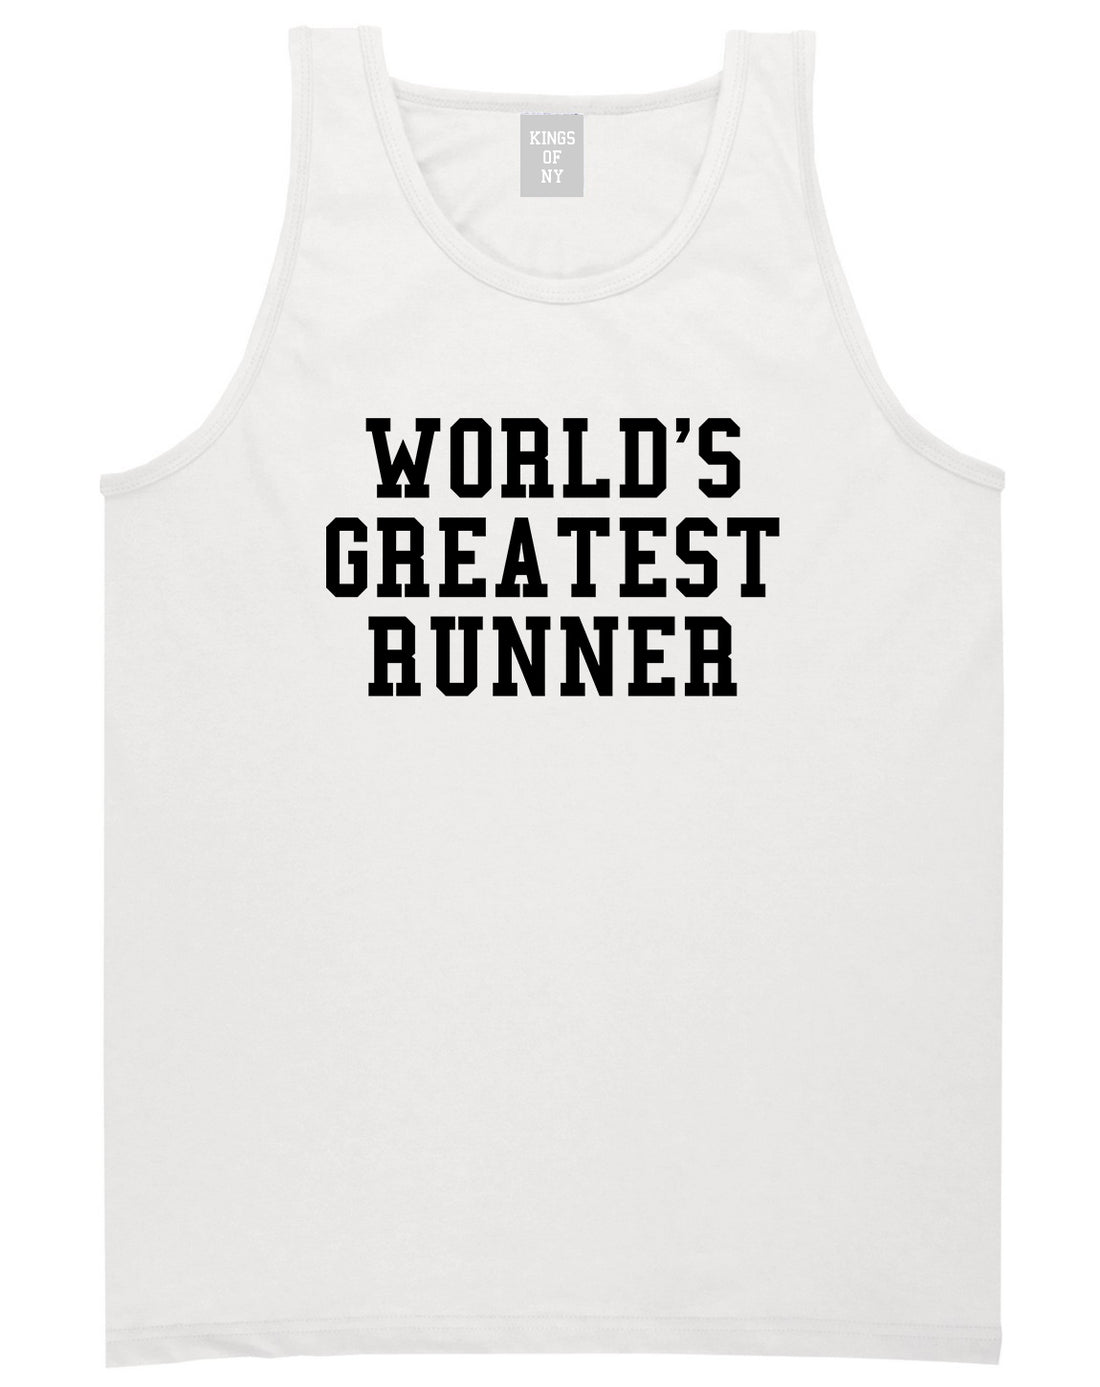 Worlds Greatest Runner Funny Fitness Mens Tank Top T-Shirt White